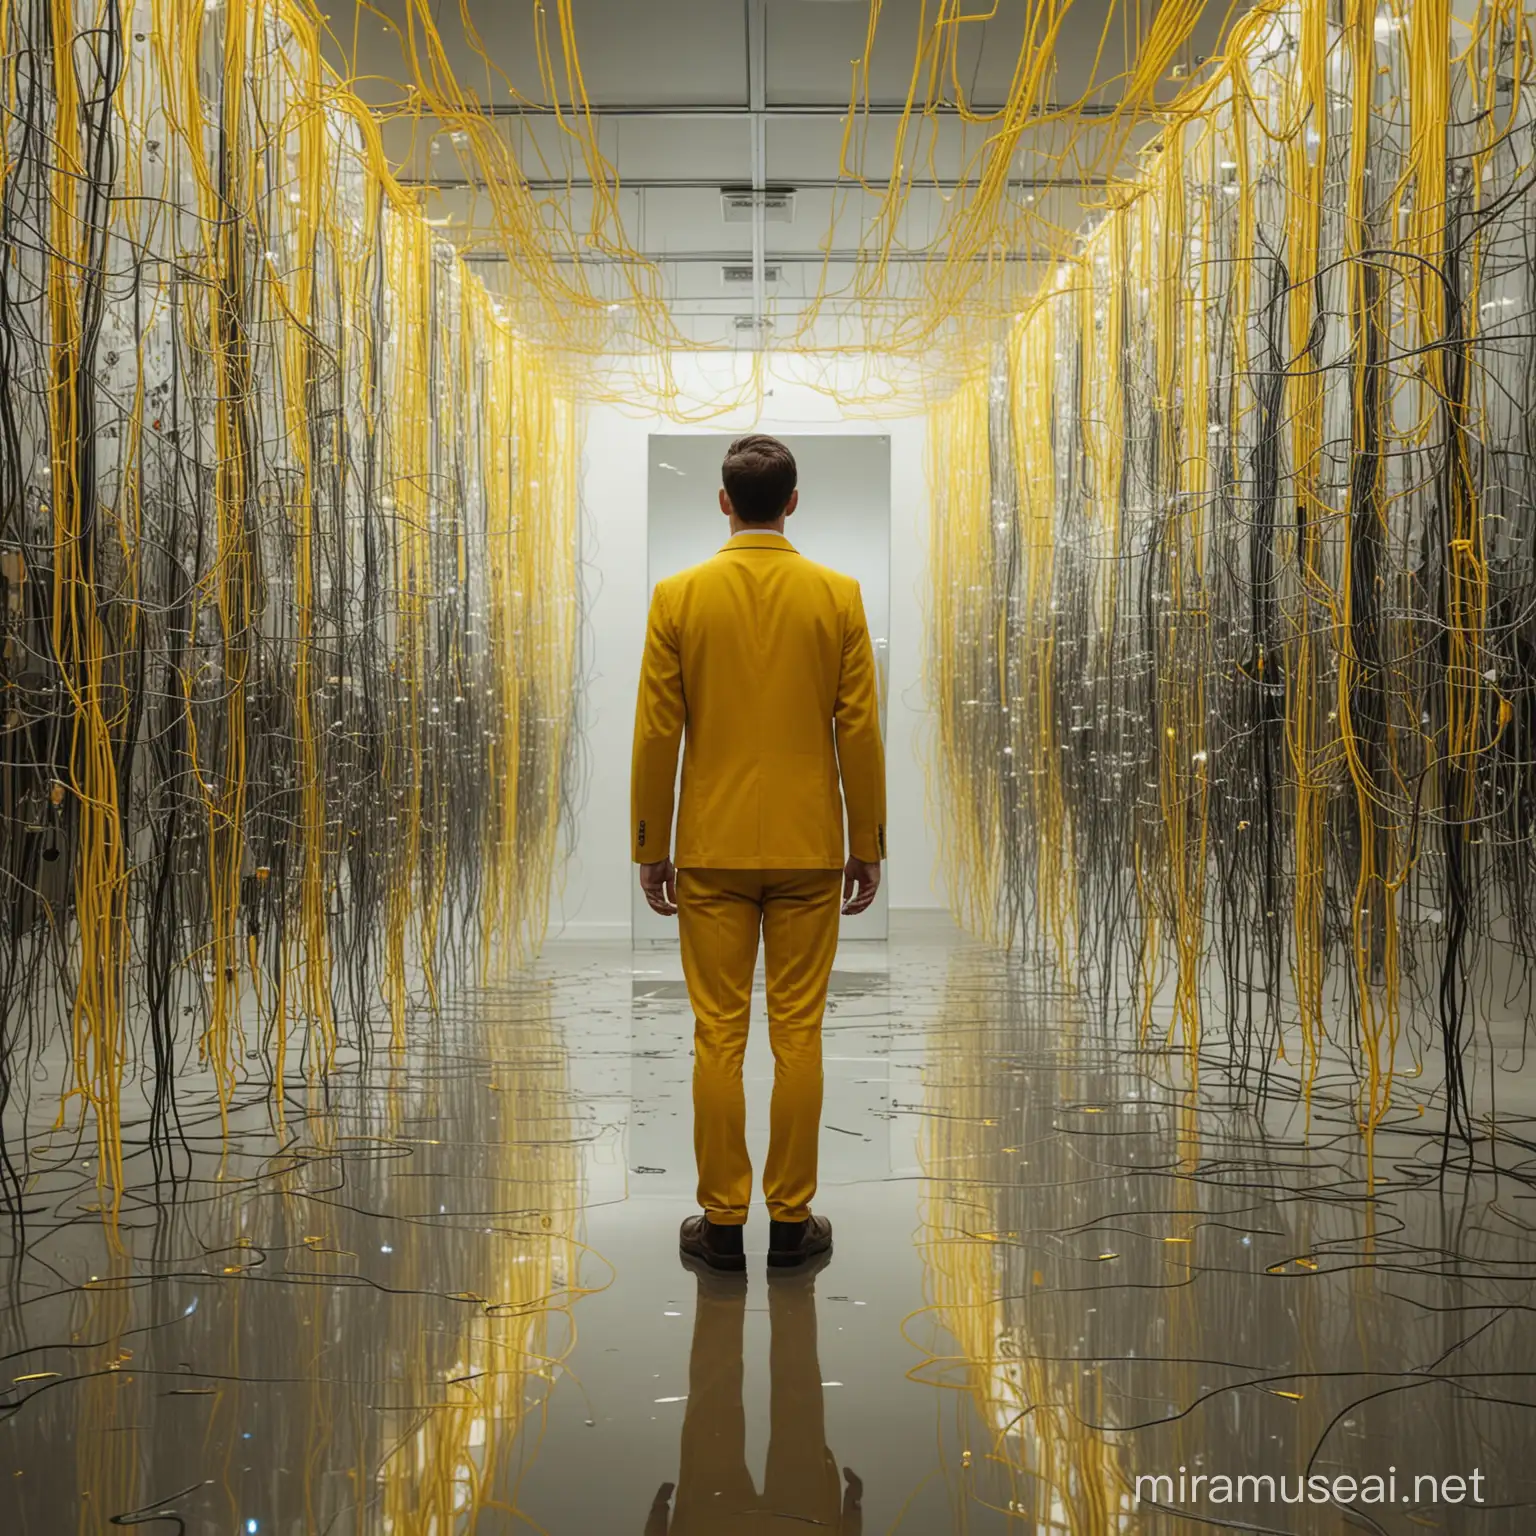 Un homme est face à un miroir et voit son reflet déformé, flottant au milieu de connexions de réseaux informatiques, comme une IA puissante. Tout est jaune.